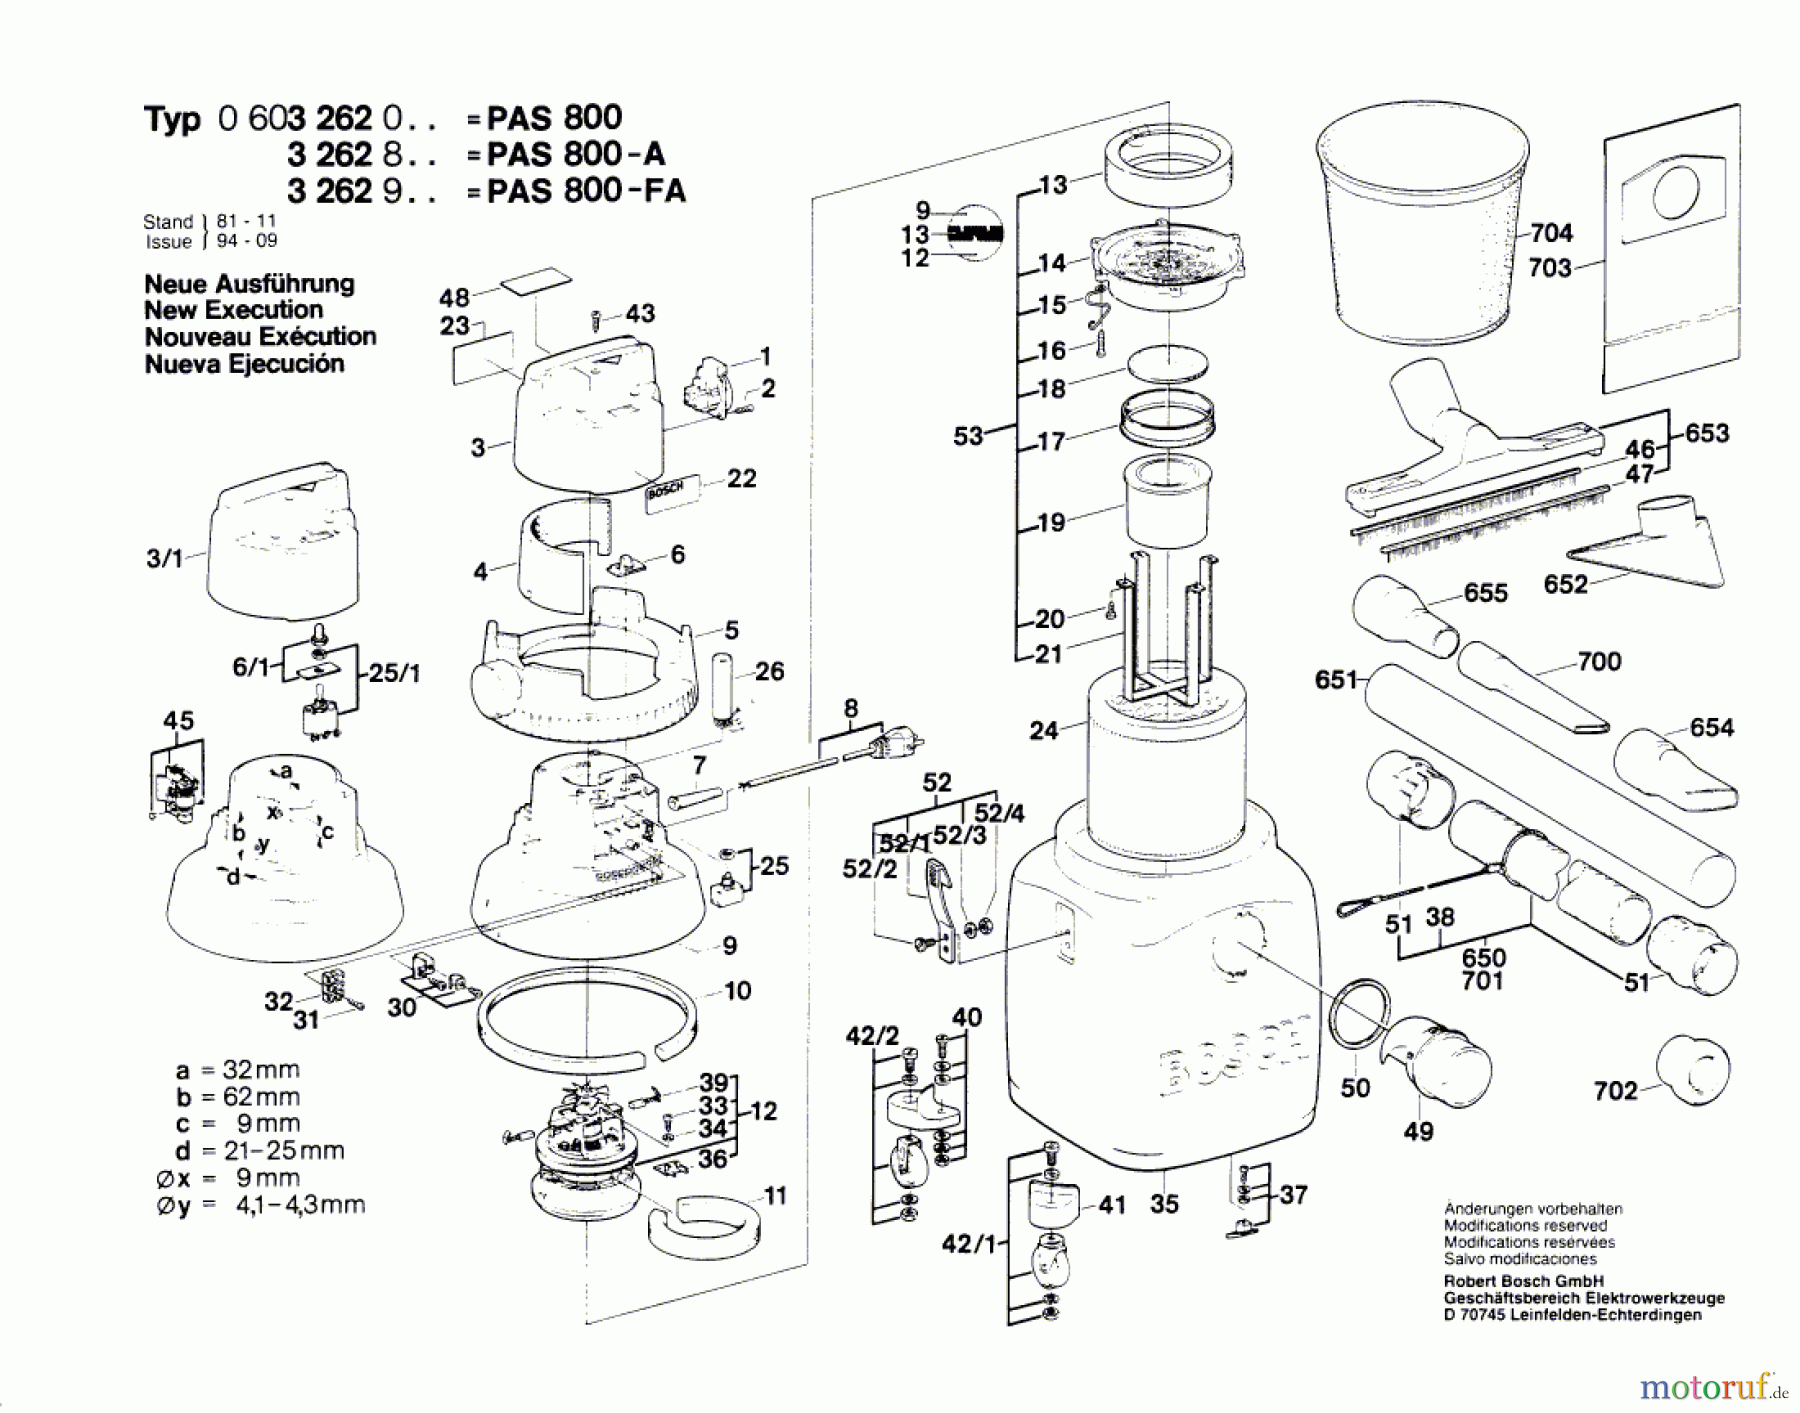  Bosch Werkzeug Allzwecksauger PAS 800 FA Seite 1